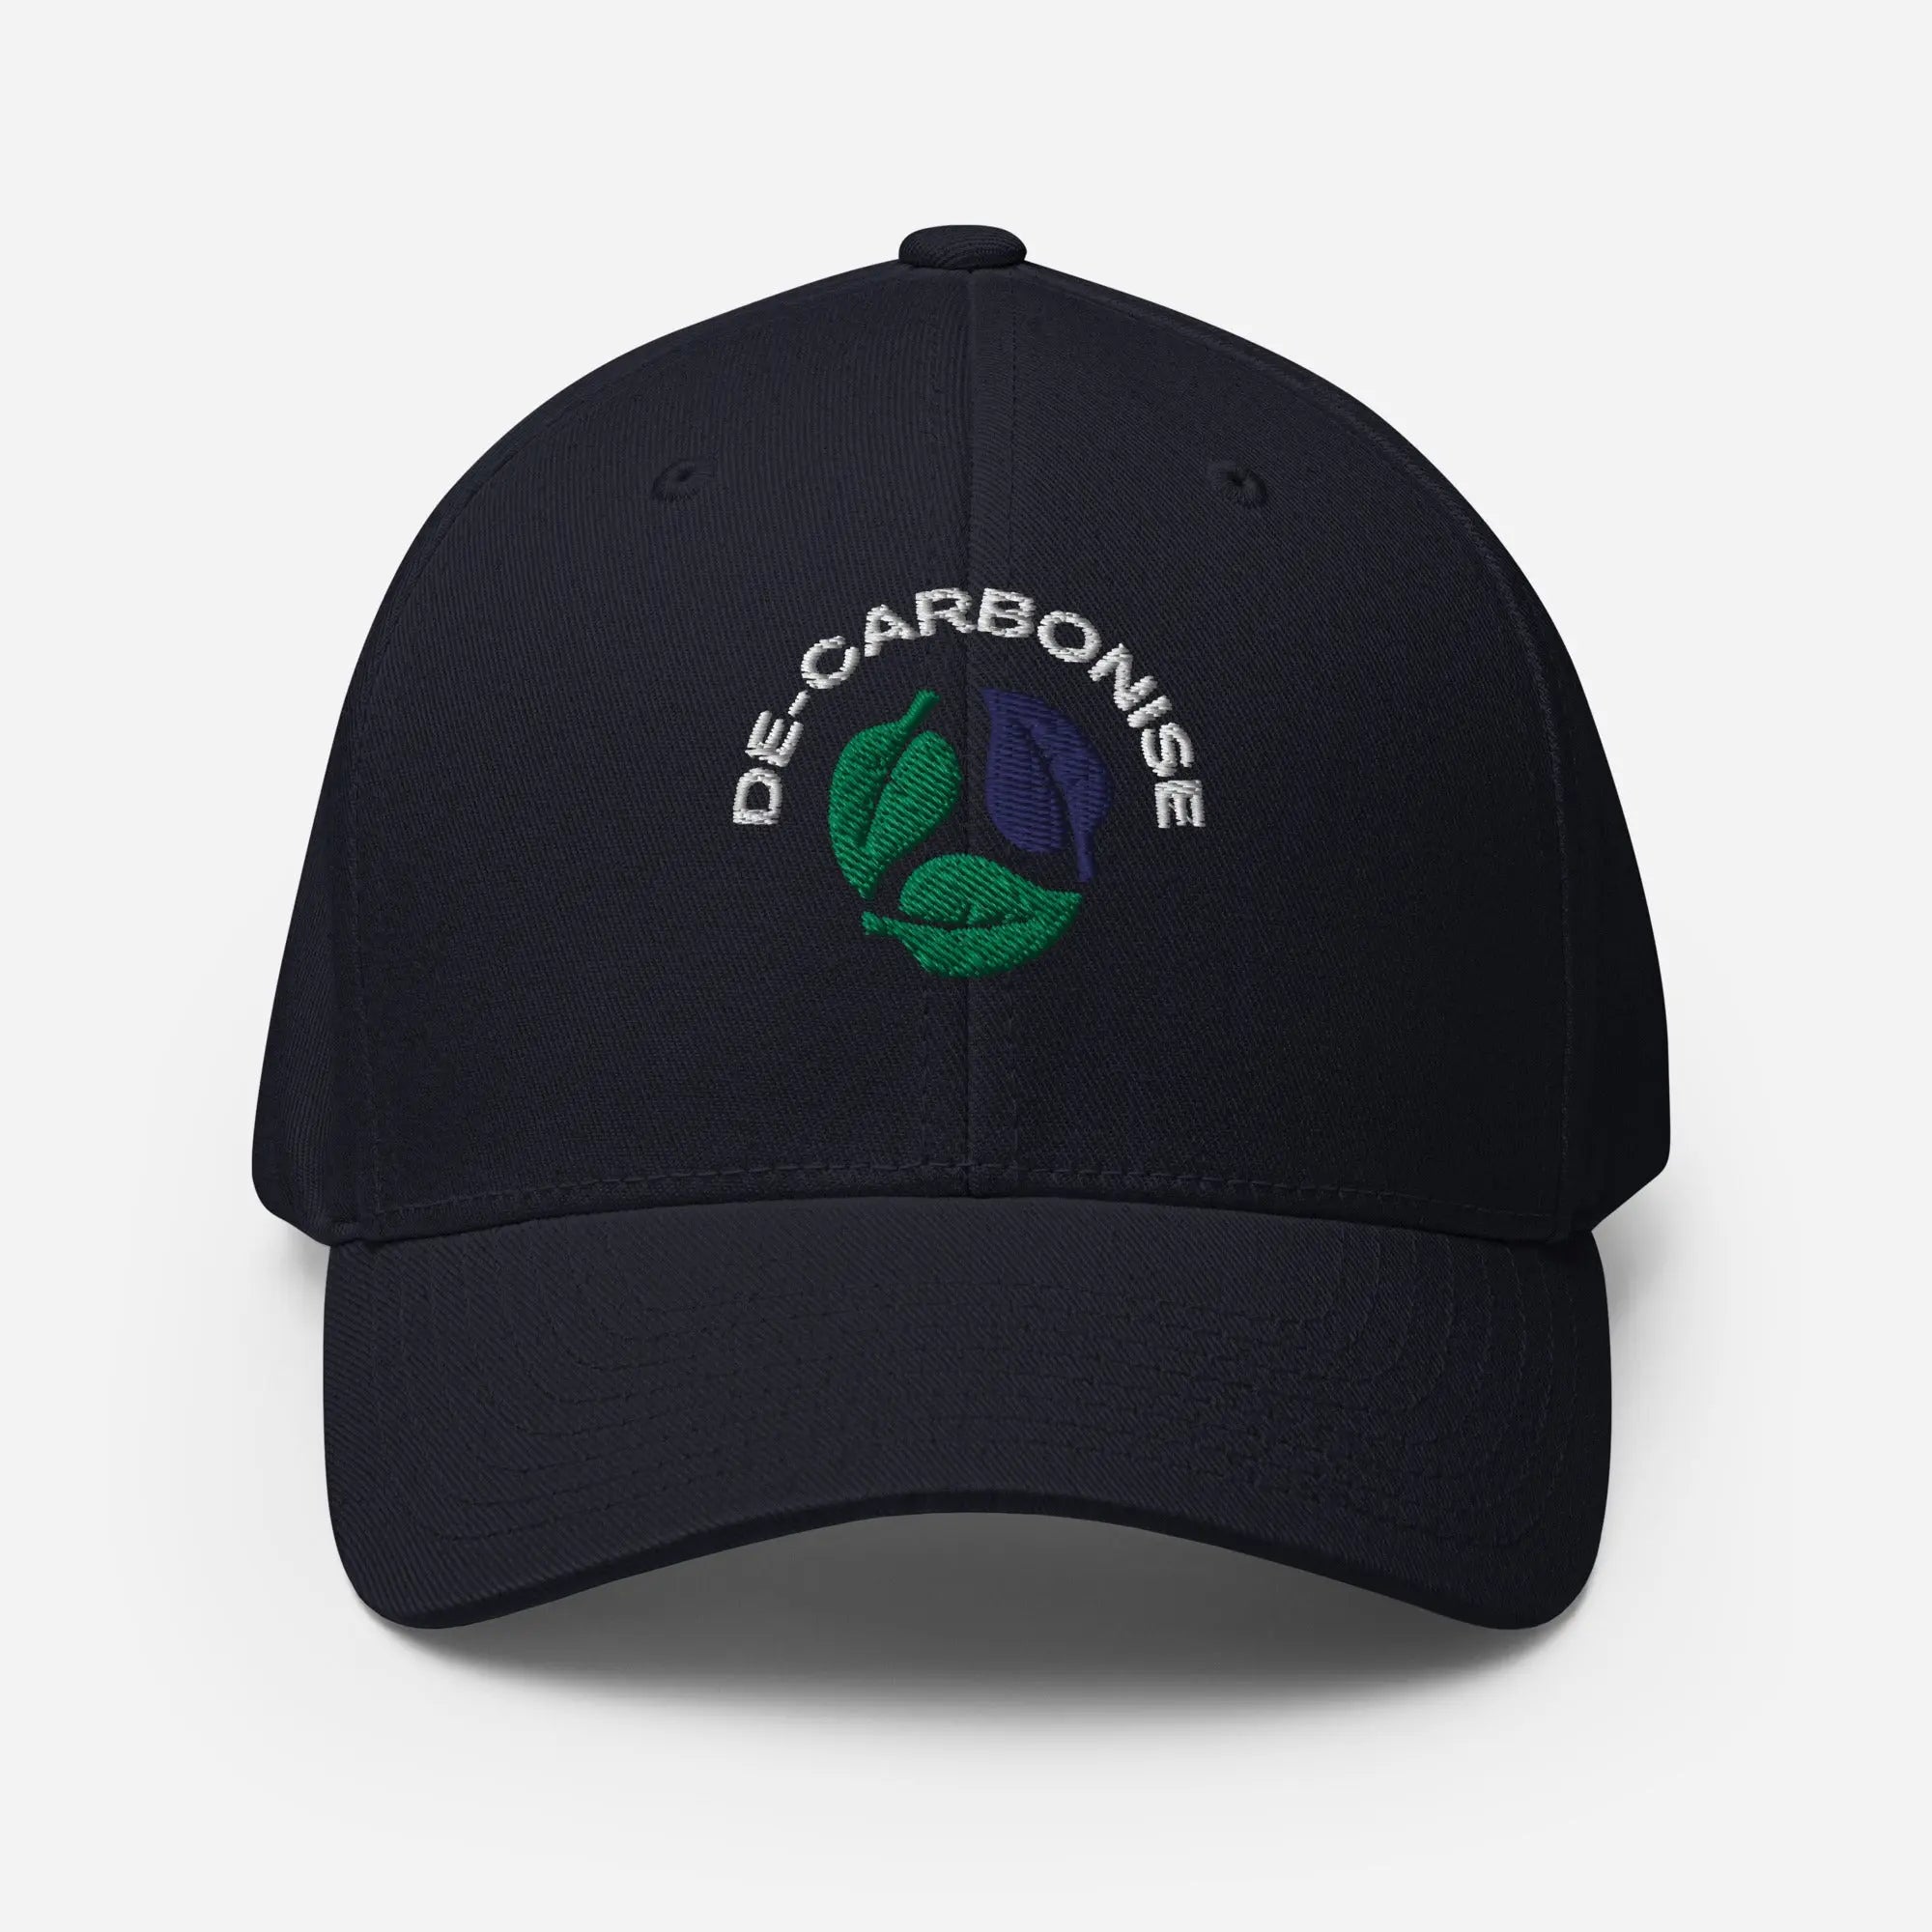 De Carbonise | Structured Twill Cap GeorgeKenny Design